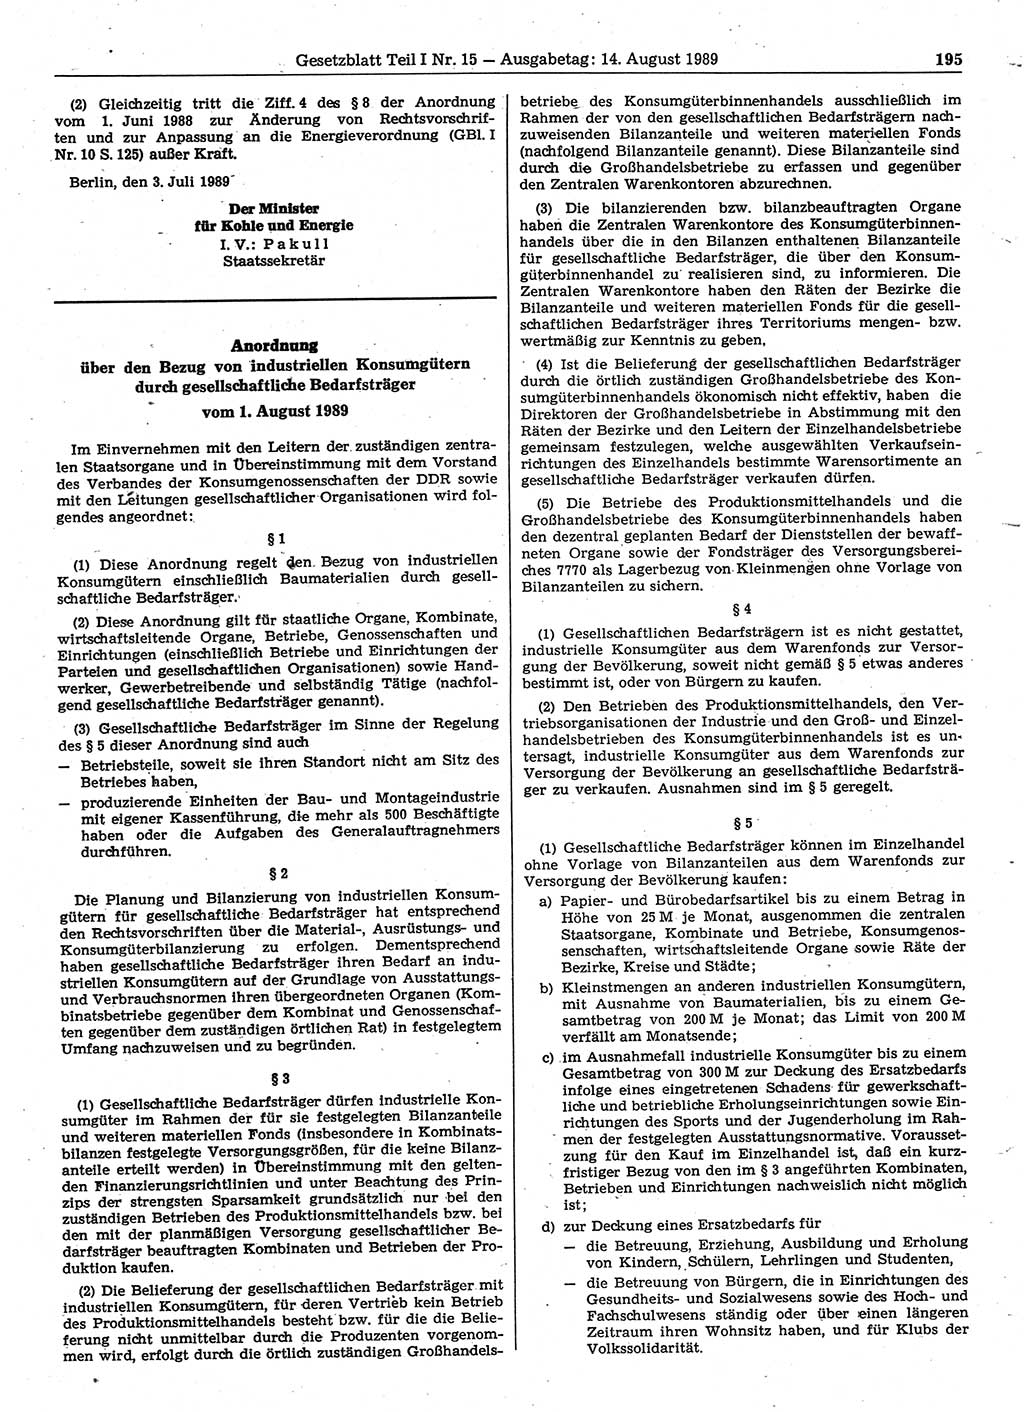 Gesetzblatt (GBl.) der Deutschen Demokratischen Republik (DDR) Teil Ⅰ 1989, Seite 195 (GBl. DDR Ⅰ 1989, S. 195)